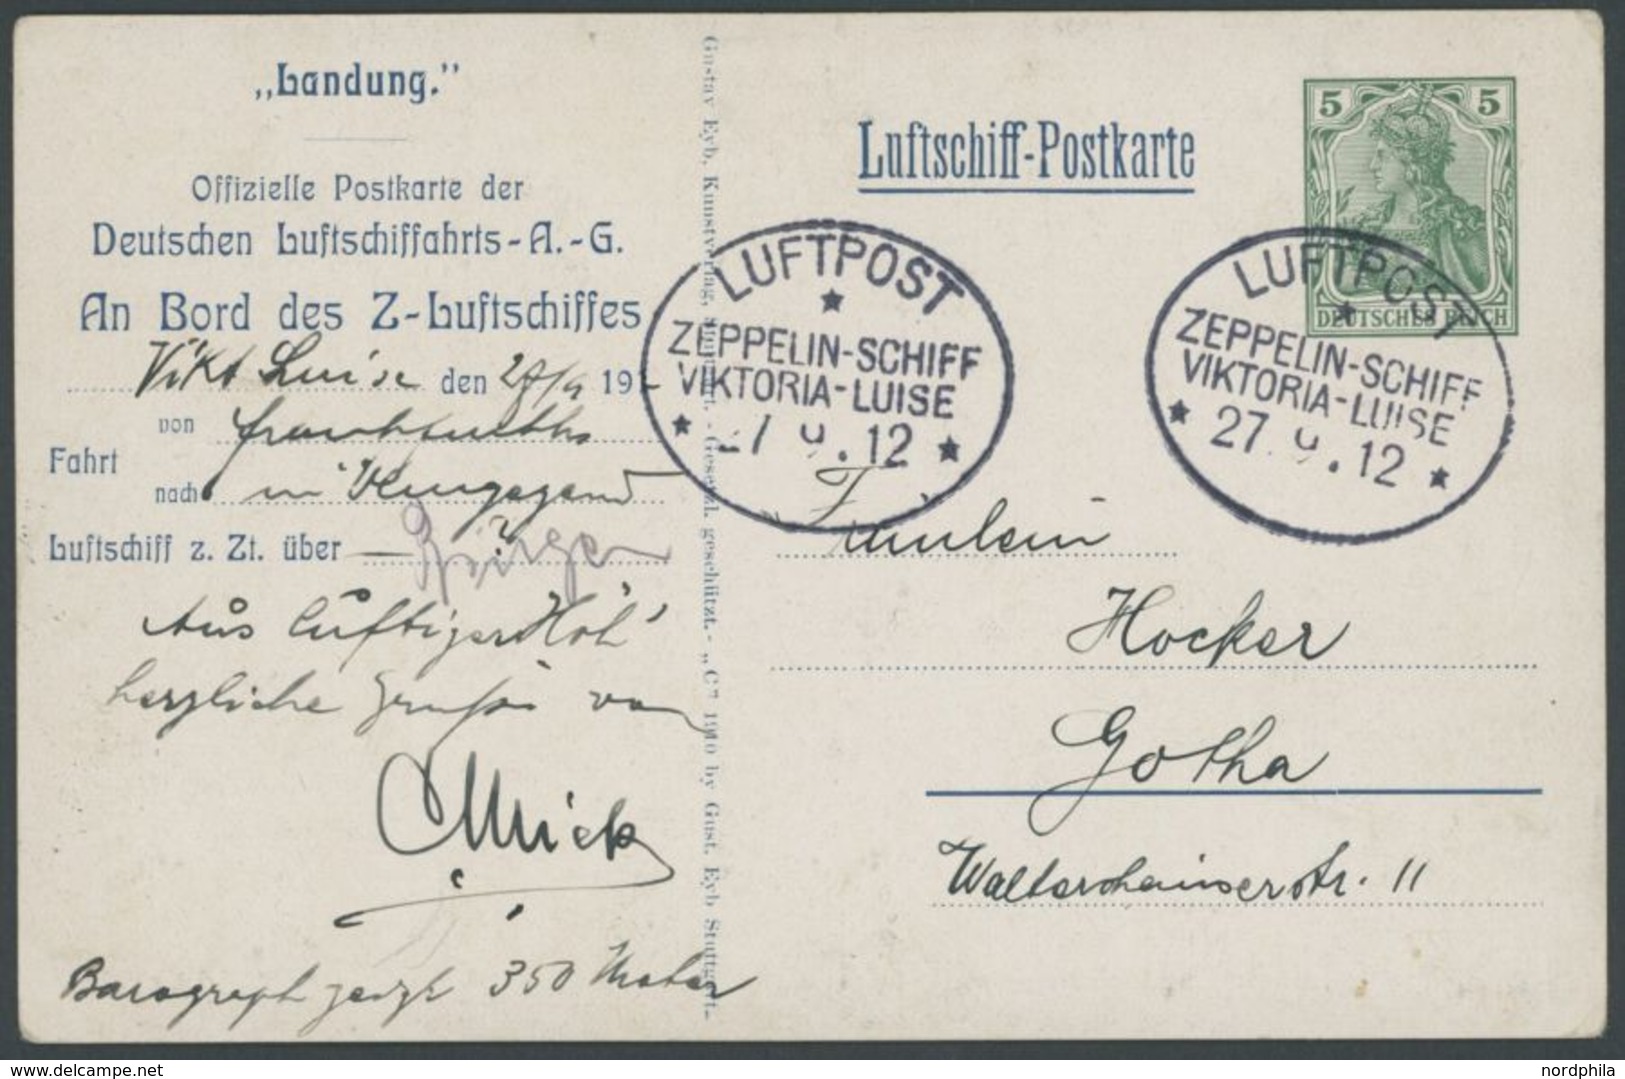 27.9.1912, Luftschiff Viktoria-Luise, Frankfurt-Rundfahrt Dokumentation Mit Original Luftschiff Postkarte Eines Passagie - Luft- Und Zeppelinpost